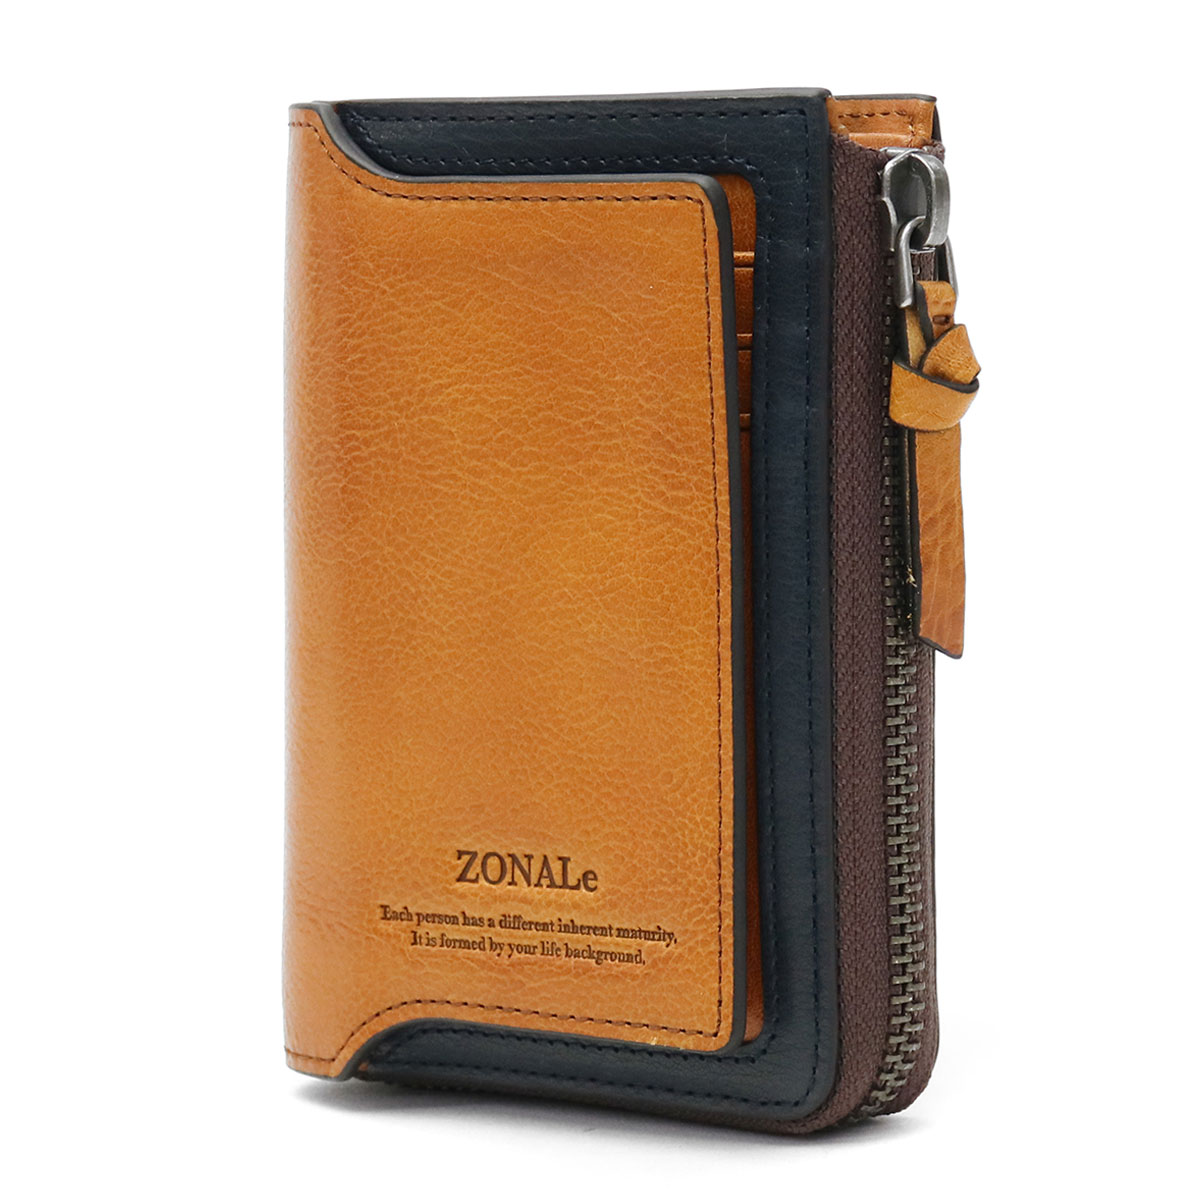 メンズファッション 財布、帽子、ファッション小物 ゾナール 二つ折り財布 ZONALe 小銭入れ付き ORLO オルロ BOX型 